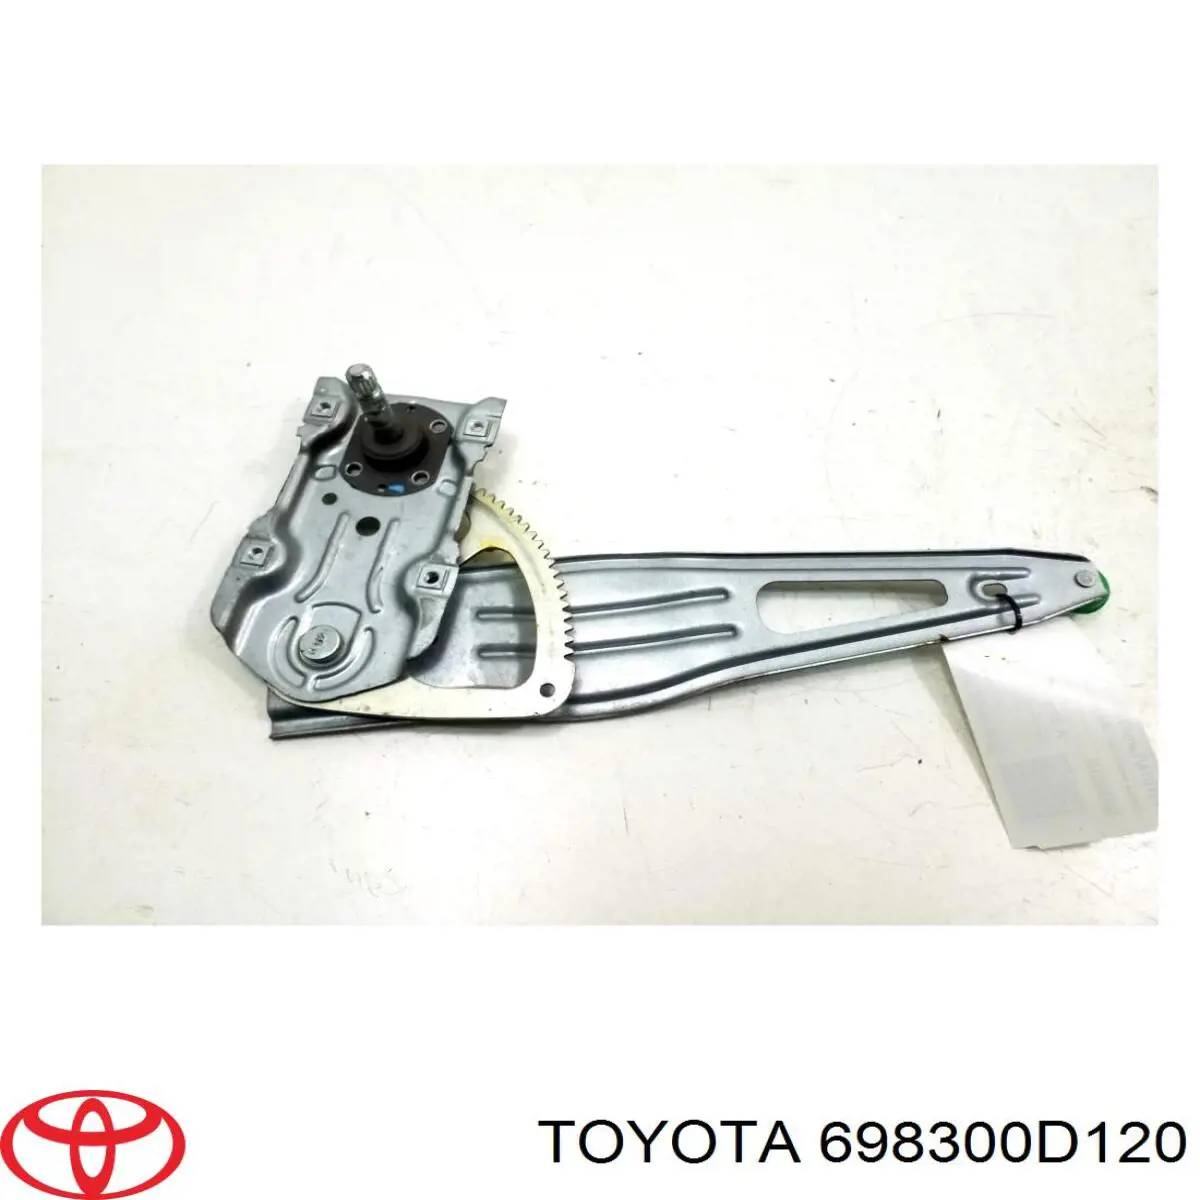 Mecanismo de acionamento de vidro da porta traseira direita para Toyota Yaris 